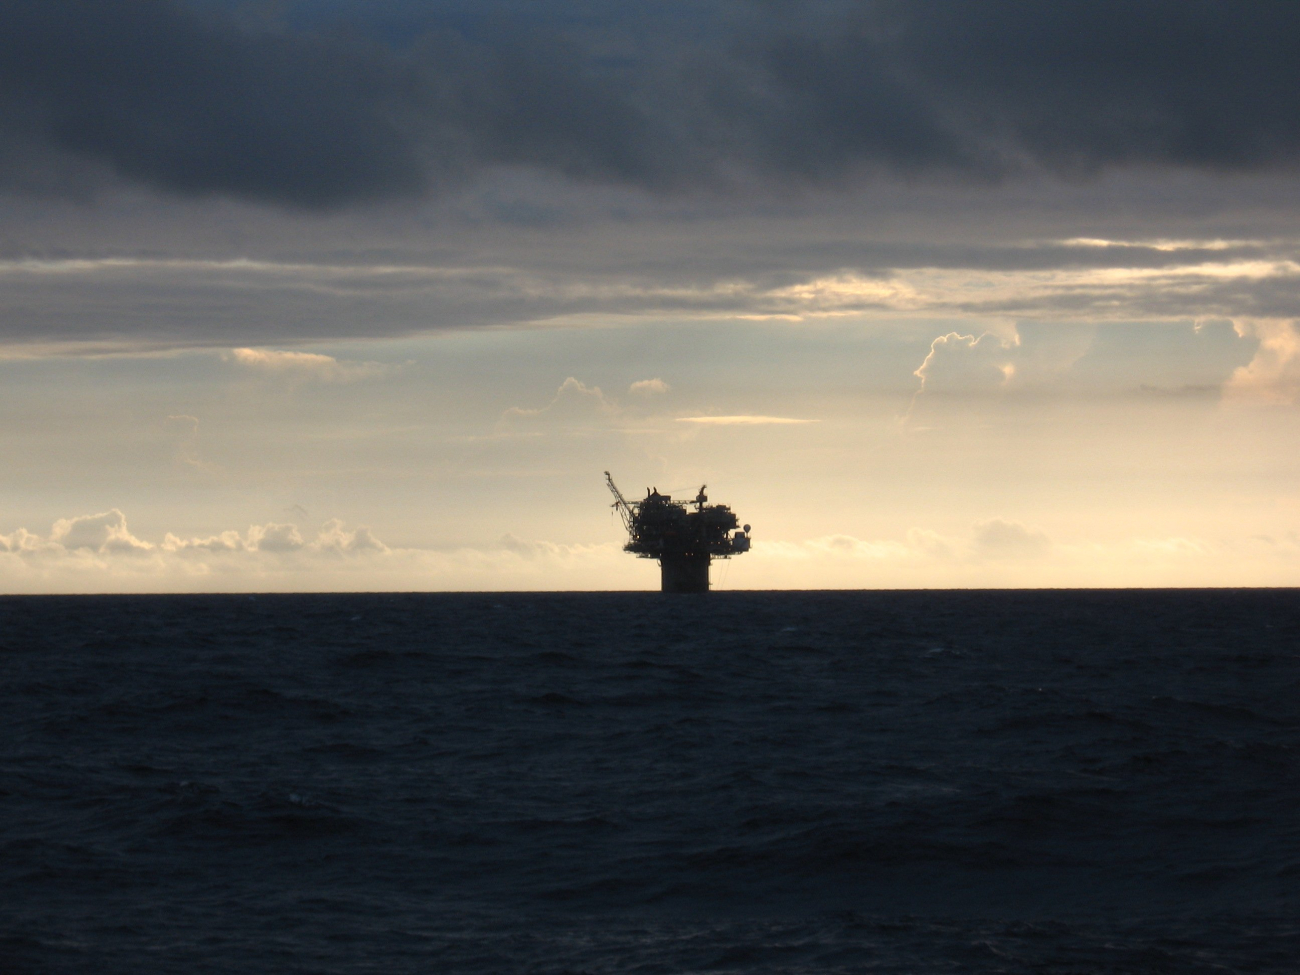 Large deepwater offshore oil platform